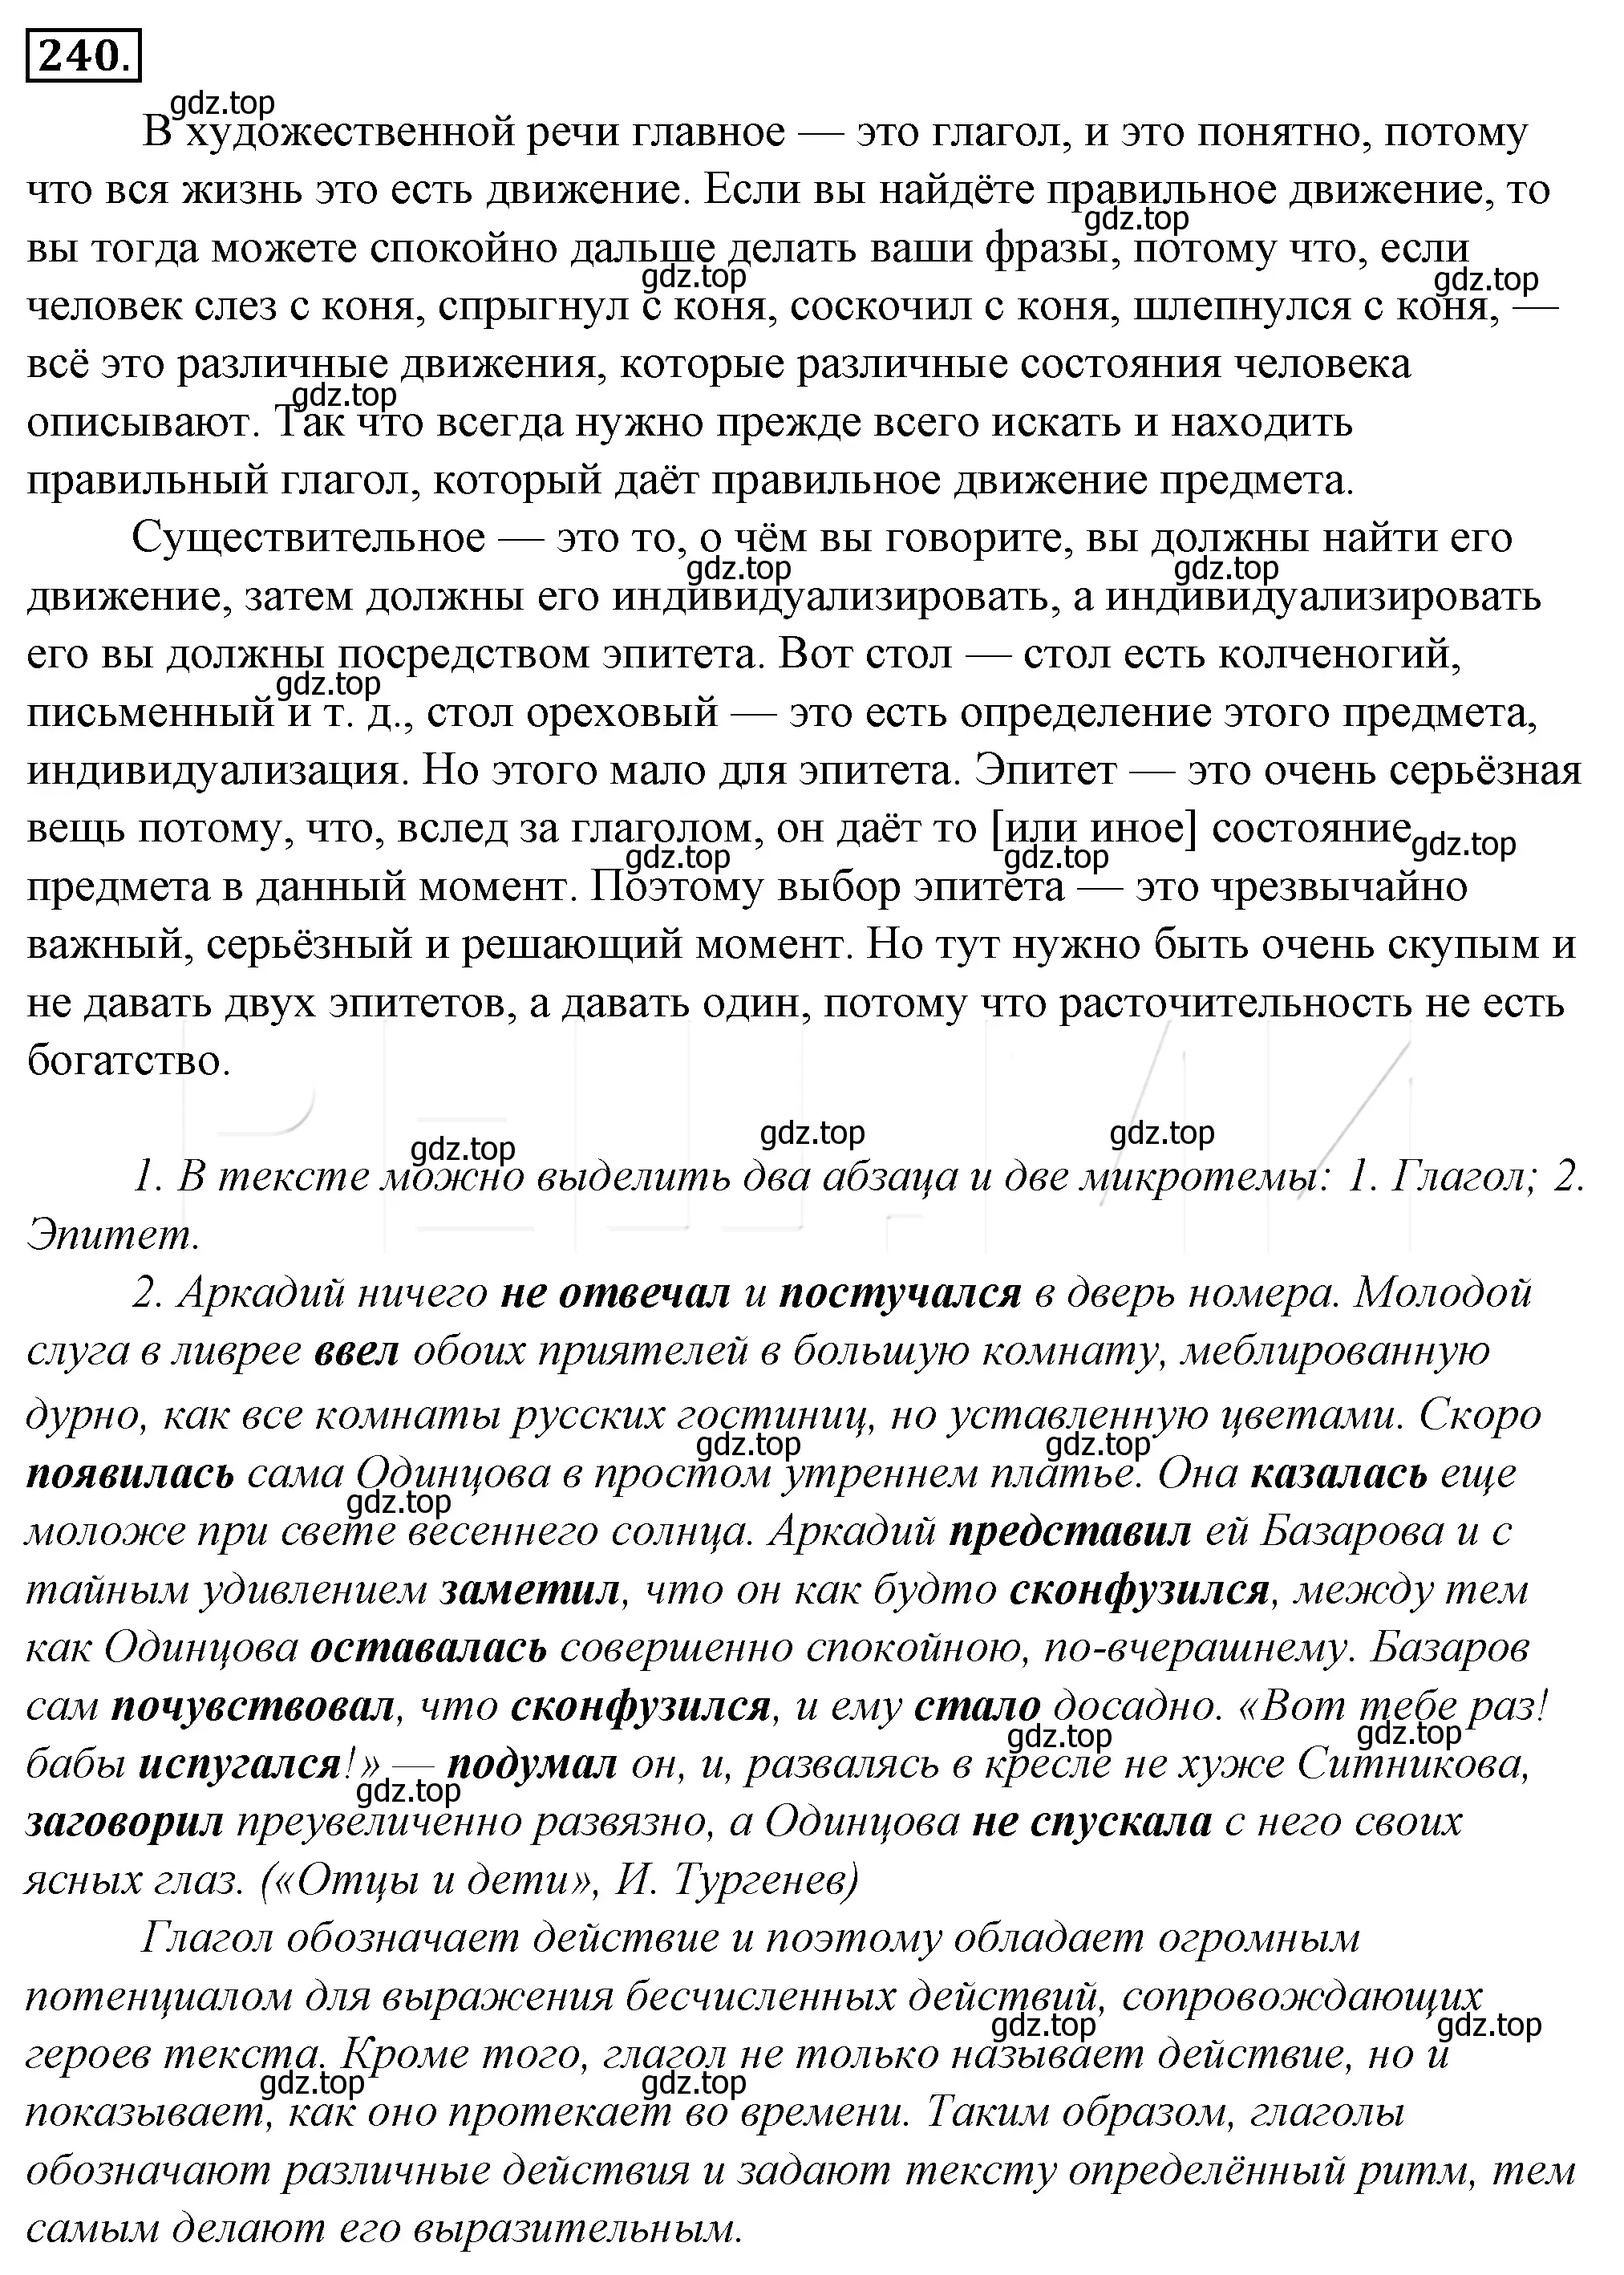 Решение 4. номер 264 (страница 250) гдз по русскому языку 10-11 класс Гольцова, Шамшин, учебник 1 часть